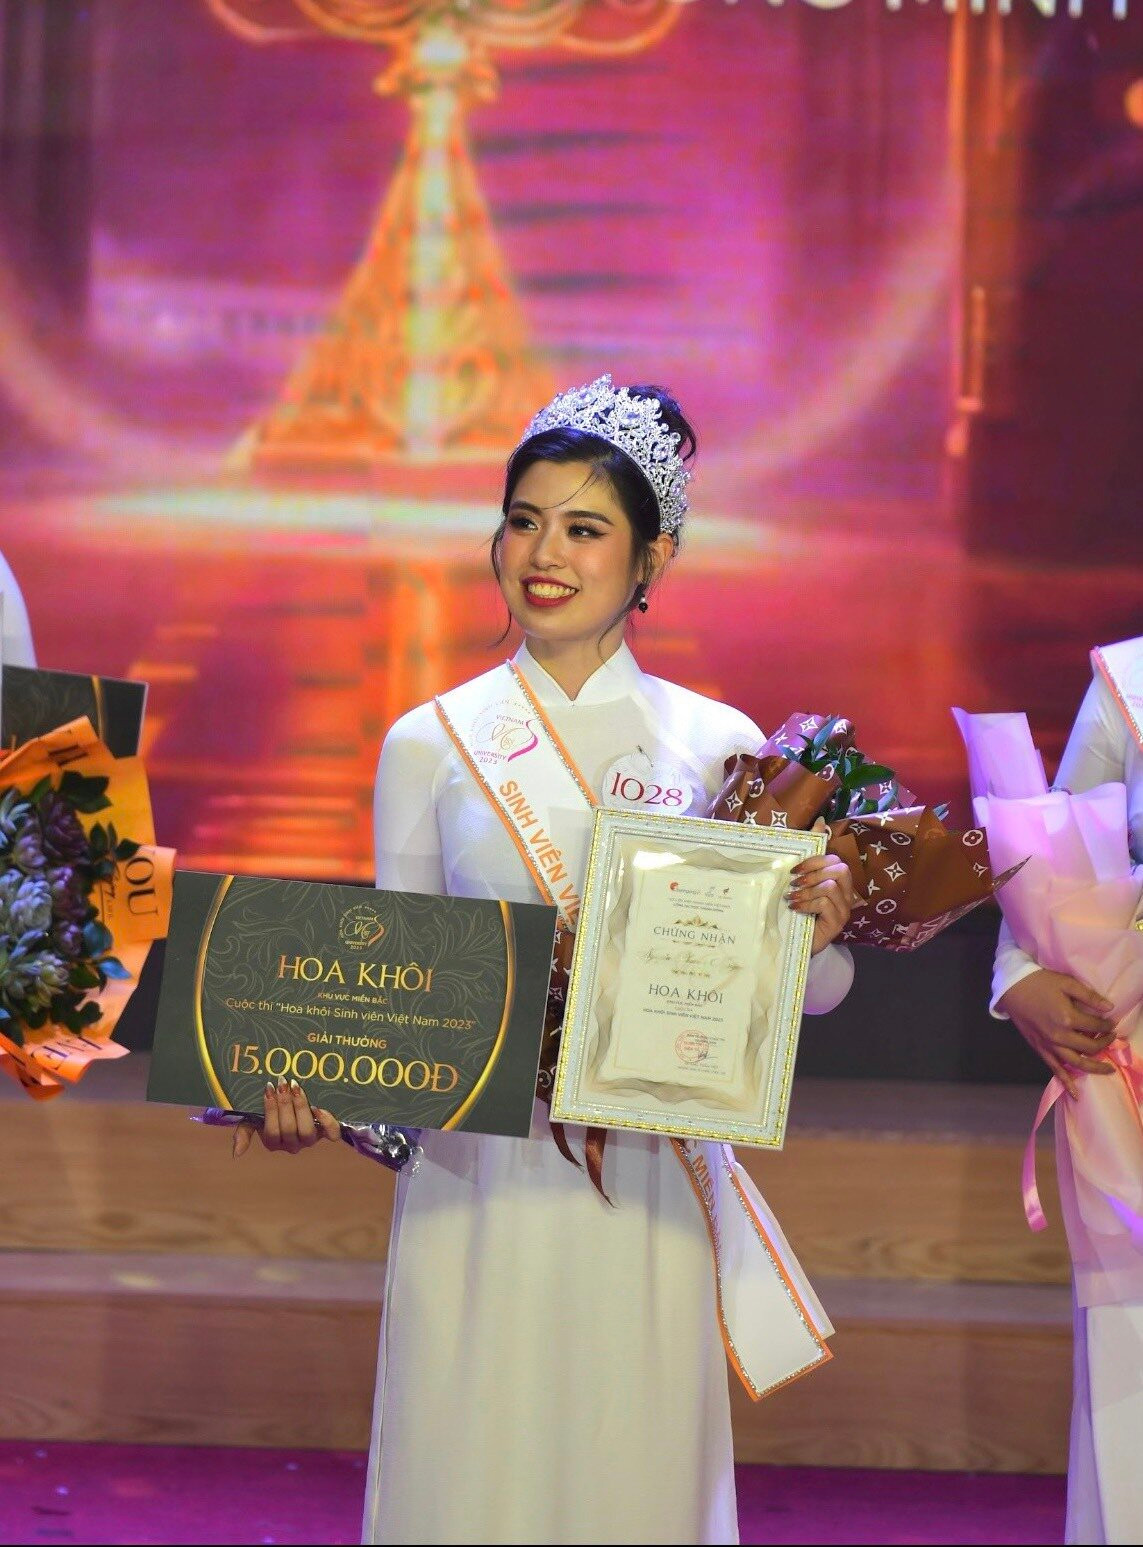 Trải qua nhiều vòng tranh tài, Nguyễn Phương Nguyên - sinh viên ngành Ngôn ngữ Anh, trường Đại học Mở Hà Nội được xướng tên cho ngôi vị cao nhất tại cuộc thi Hoa khôi sinh viên Việt Nam năm 2023, khu vực miền Bắc.